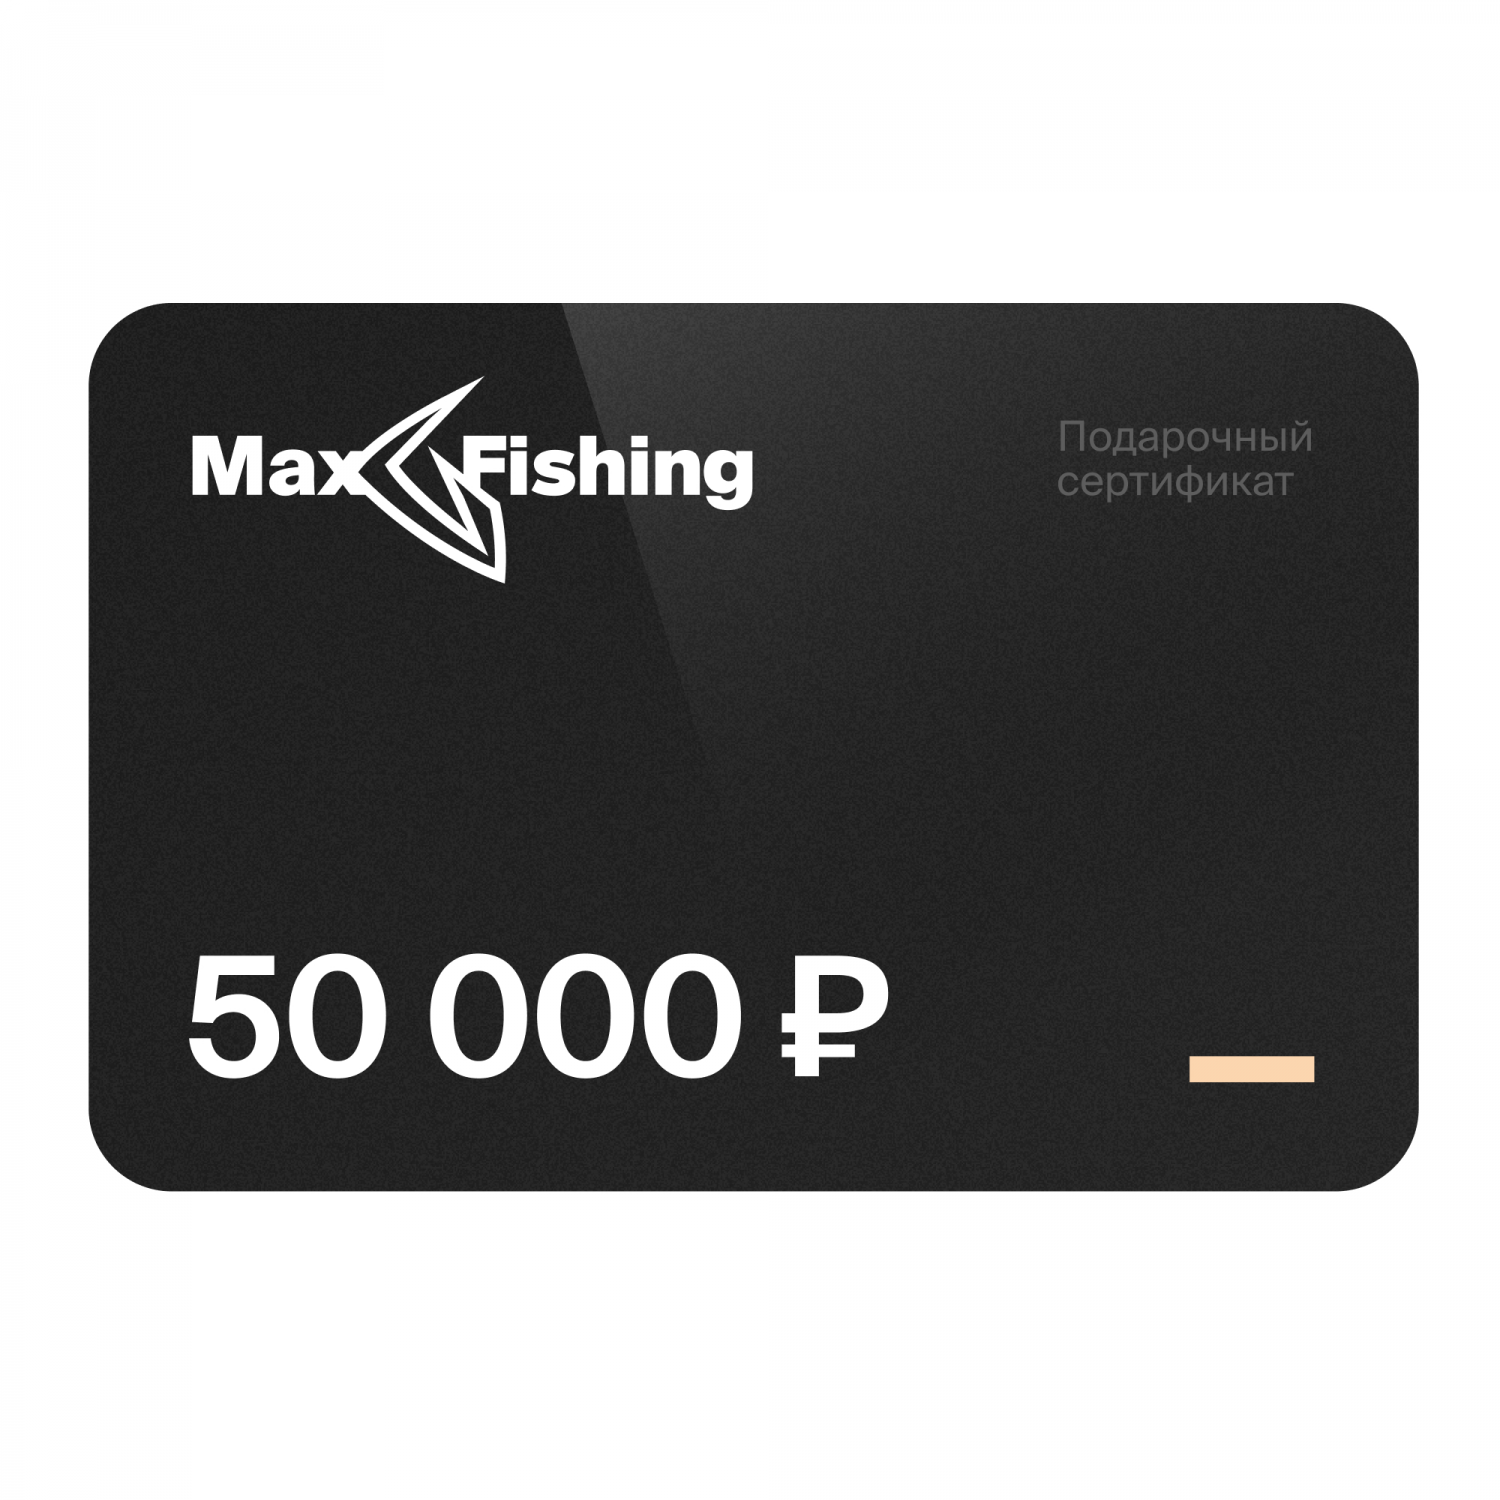 Подарочный сертификат MaxFishing 50 000 ₽ виртуальный подарочный сертификат 3 000